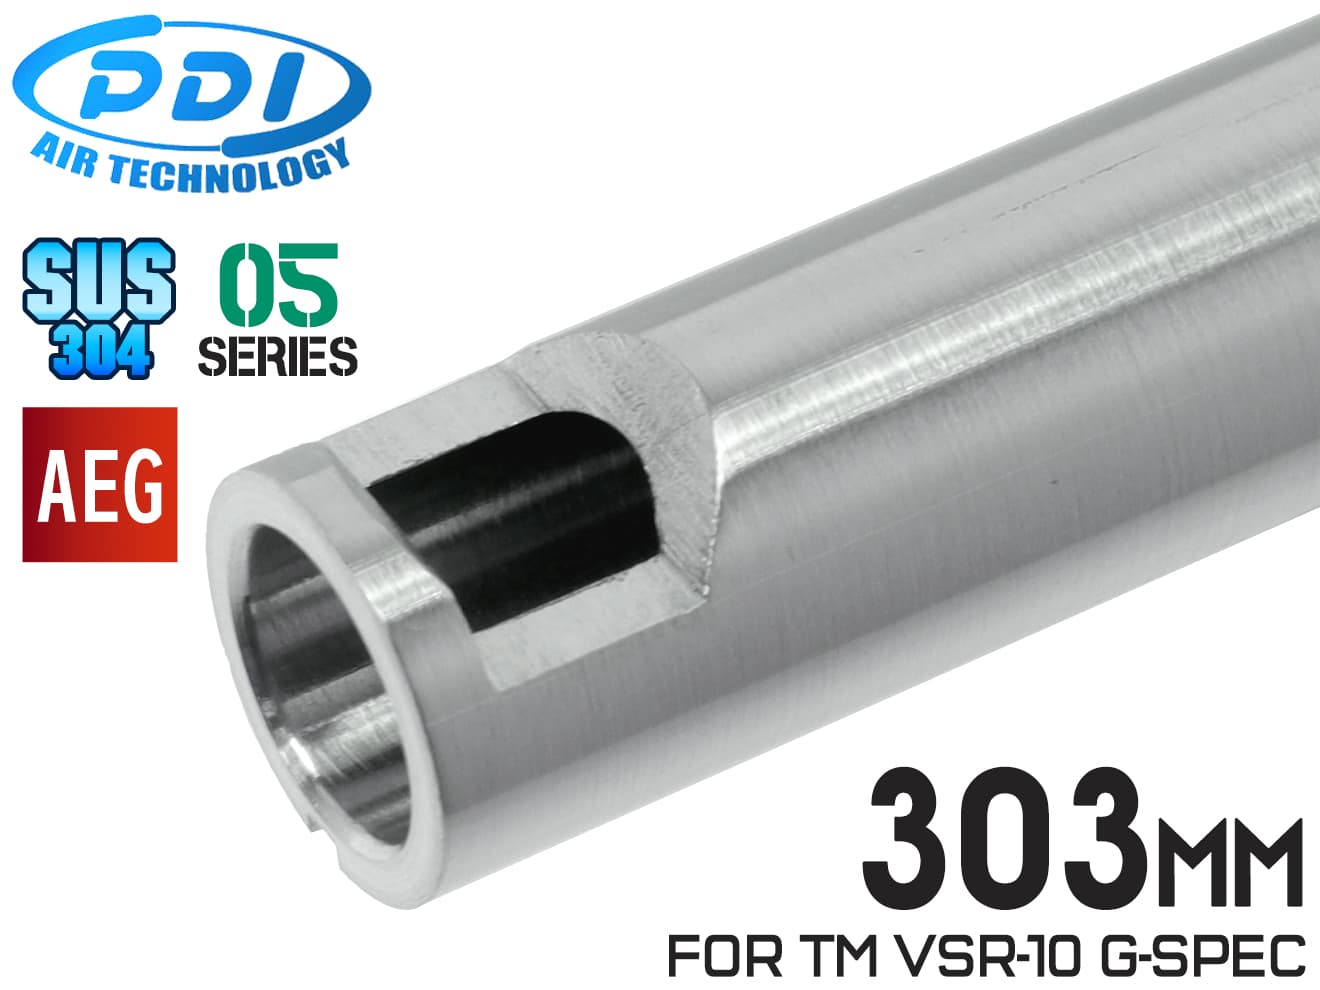 PDI 05シリーズ AEG 超精密 ステンレスインナーバレル(6.05±0.002) 303mm マルイ M733/PDI BHD Barrel/VSR-10 G-SPEC(PDIチャンバー)◆初速 集弾 バランス 強度